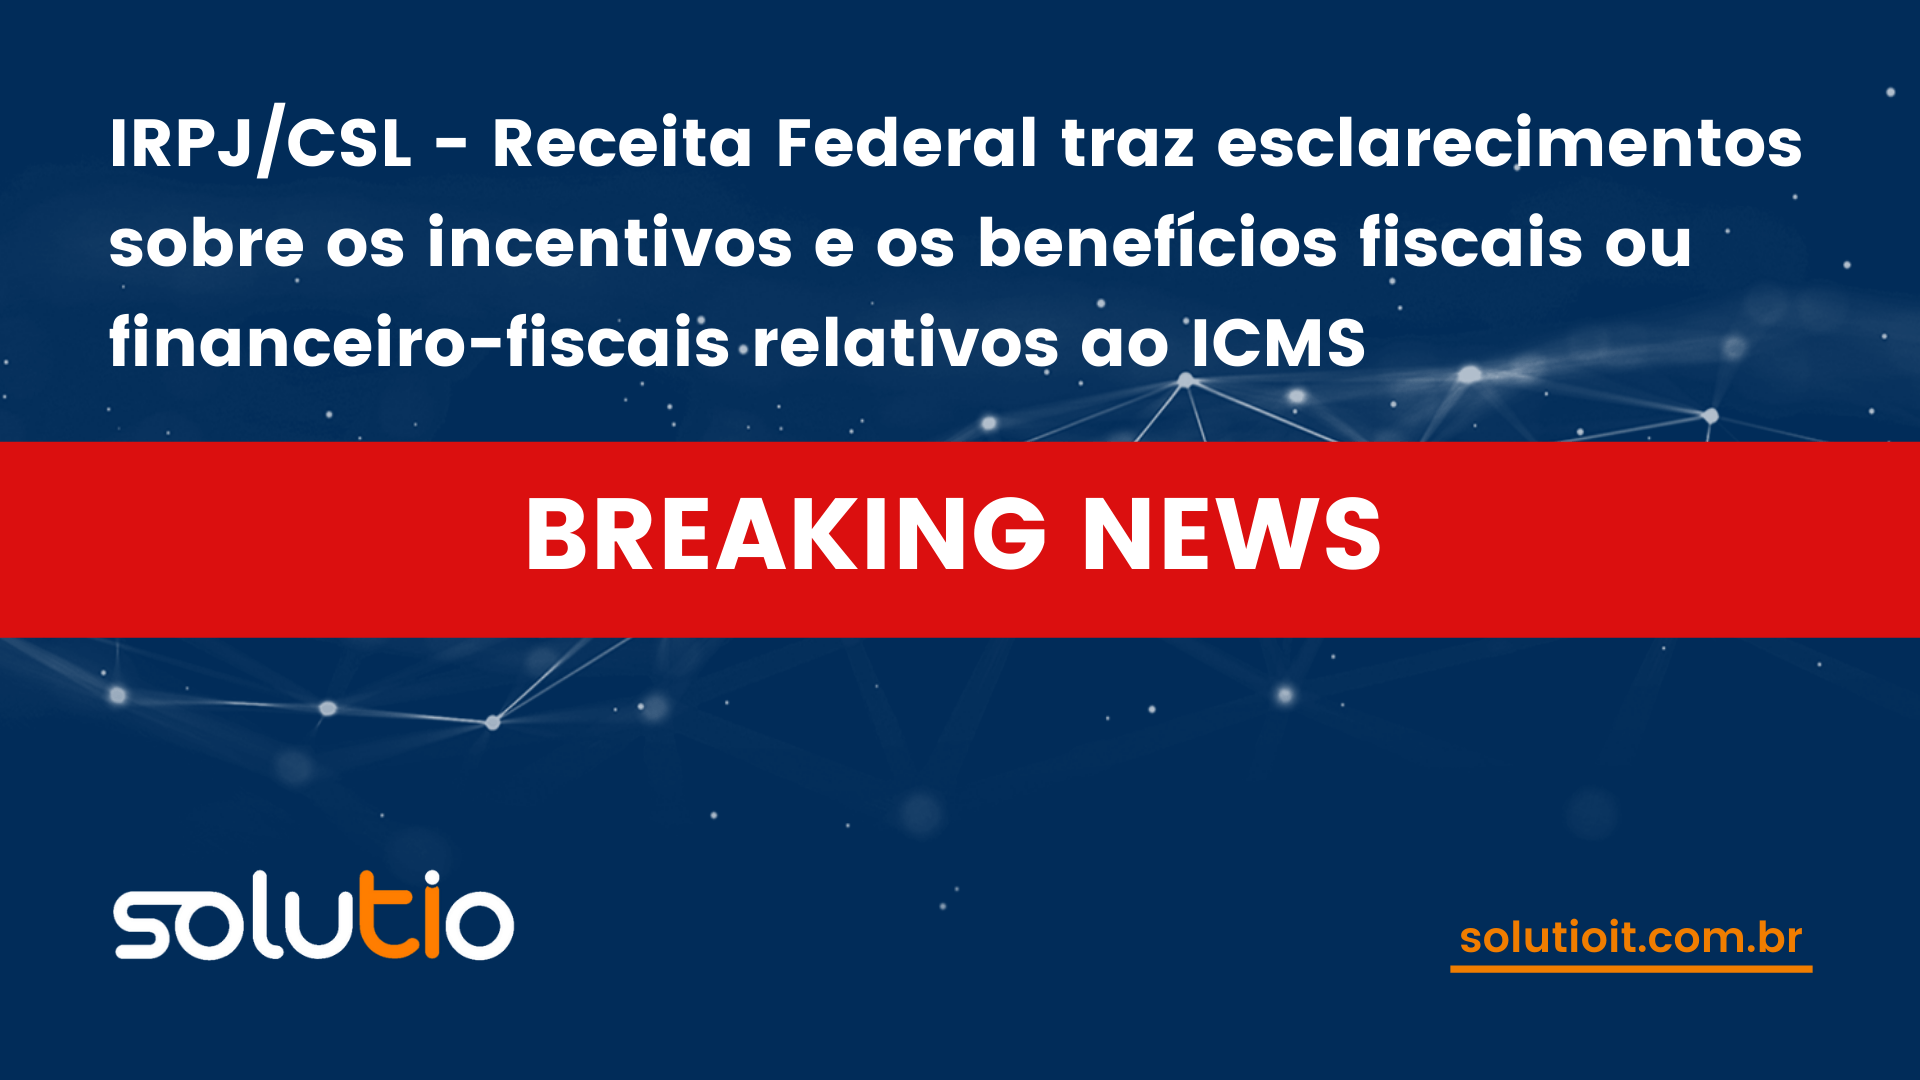 IRPJ/CSL - Receita Federal traz esclarecimentos sobre os incentivos e os benefícios fiscais ou financeiro-fiscais relativos ao ICMS